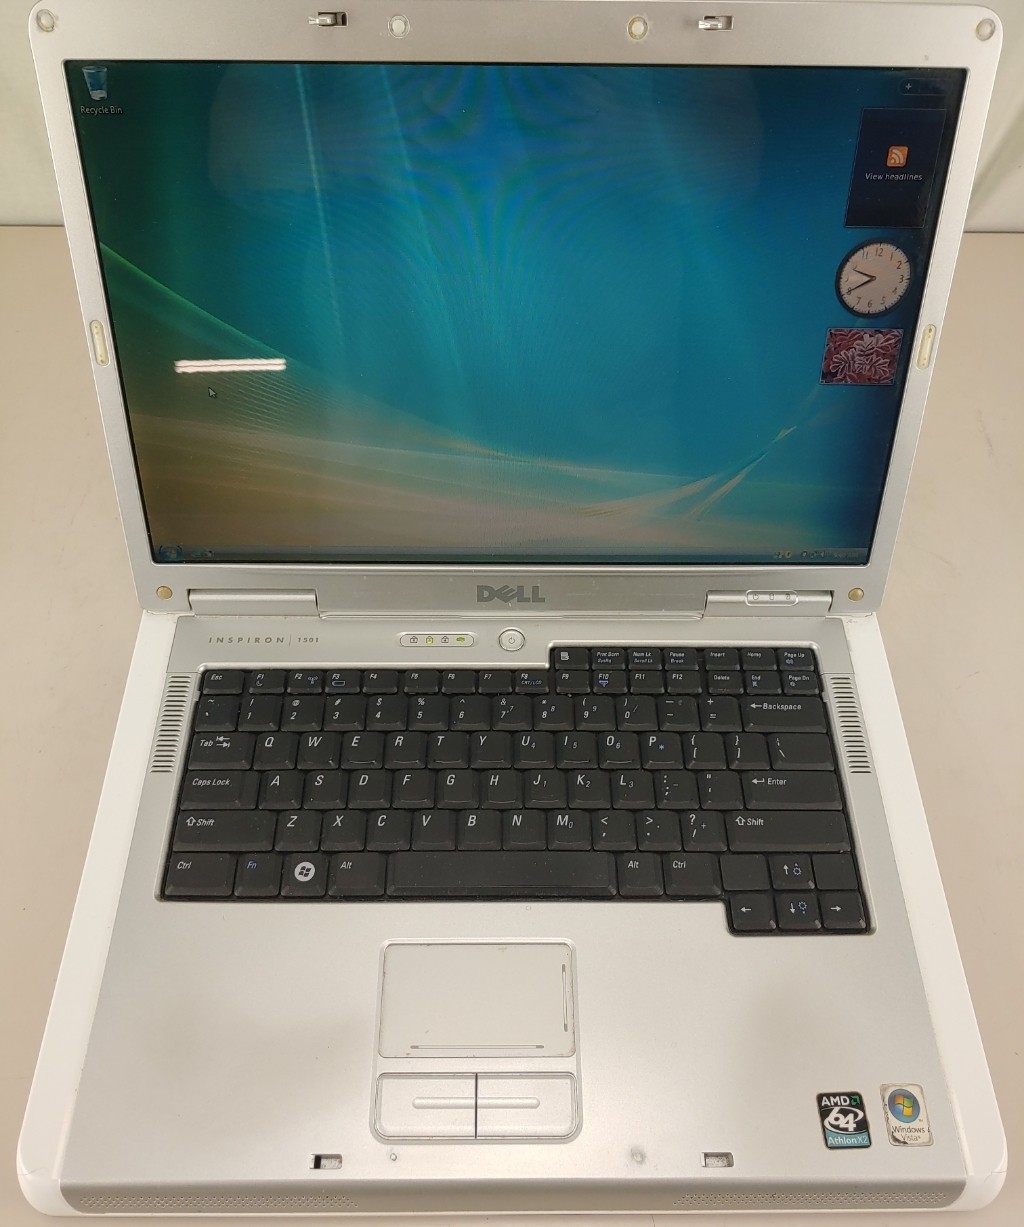 Dell Inspiron E1501 Laptop AMD 64 X 2 Dual Core Processor TK-55 1.80Ghz 2GB160GB